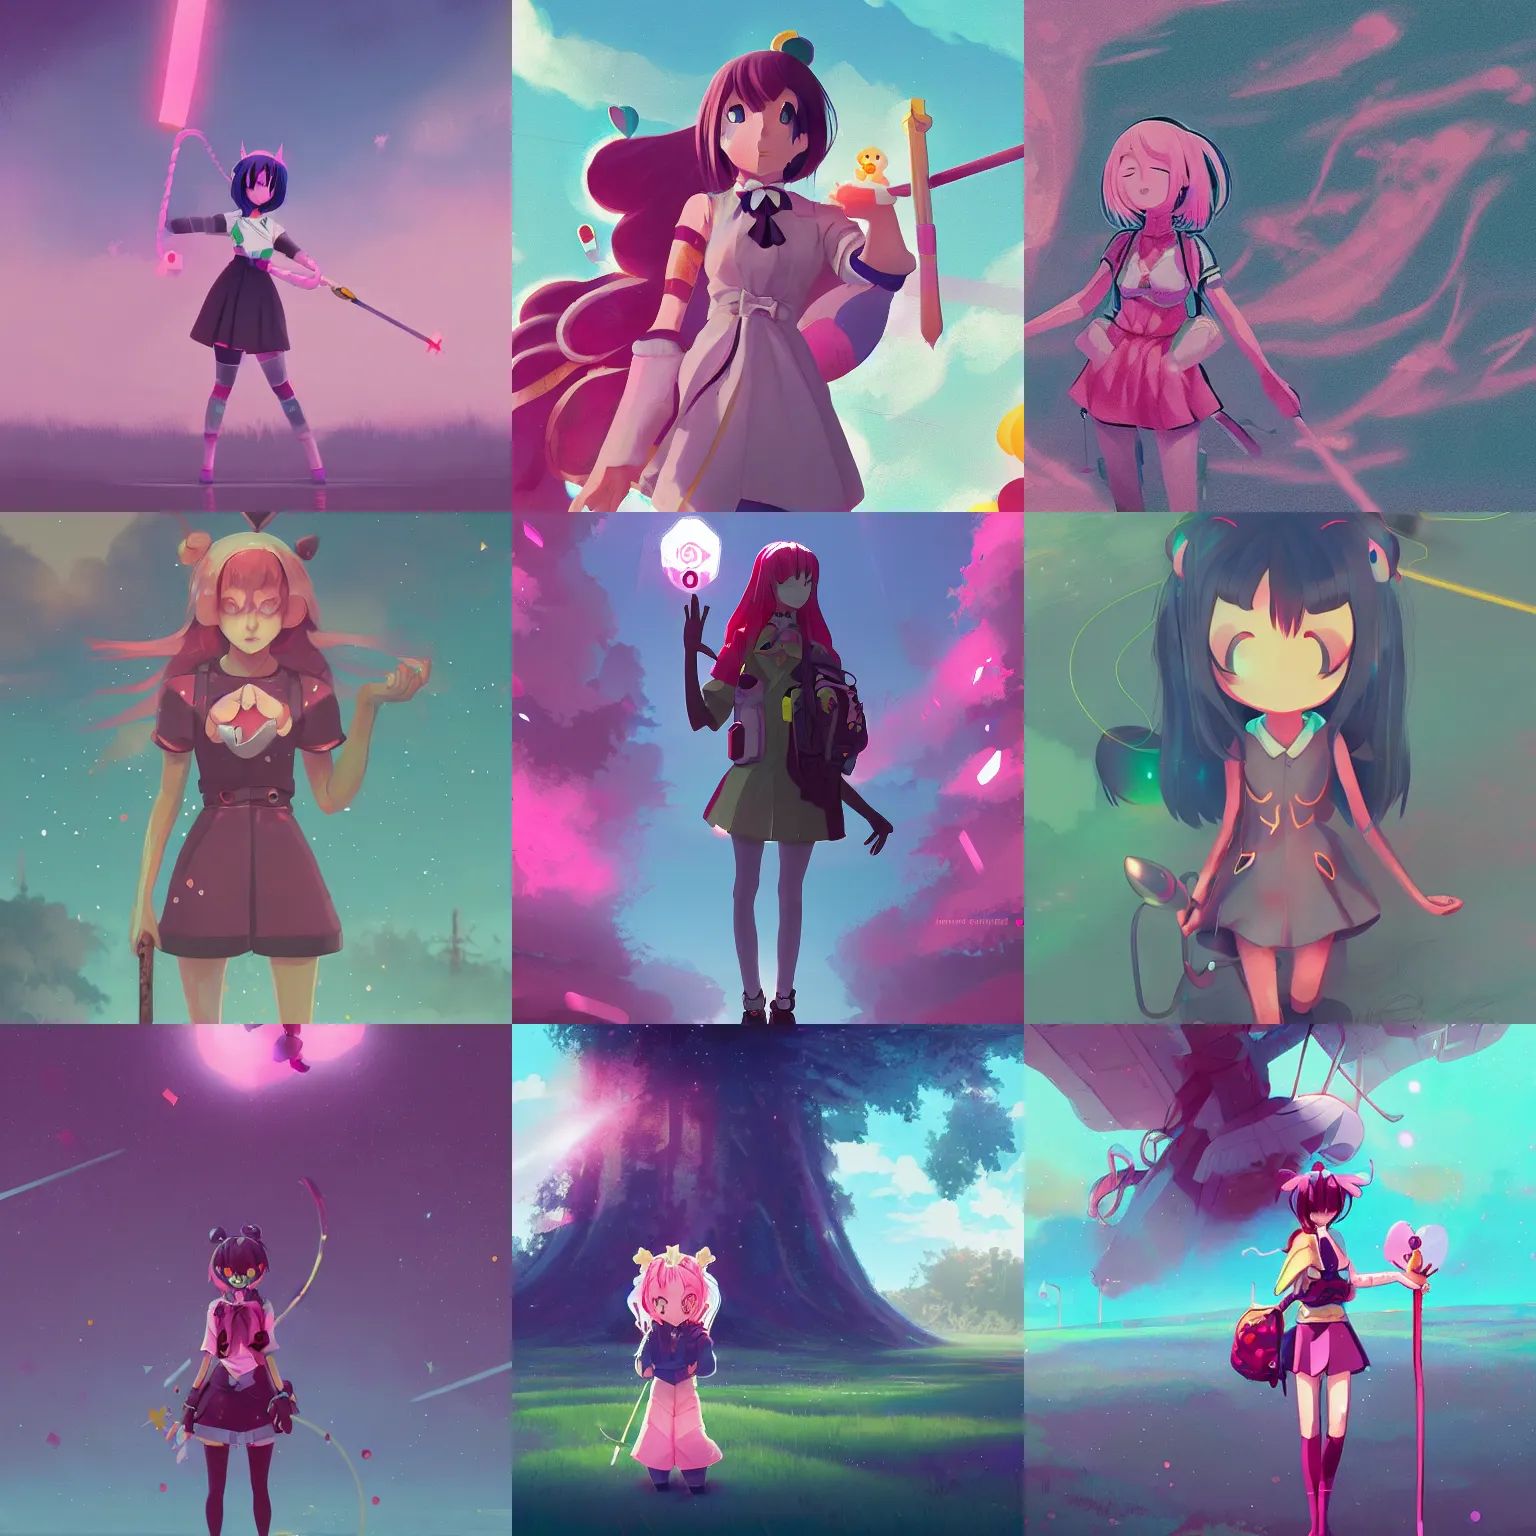 Prompt: magical girl illustration anime style, digital painting, artstation, simon stalenhag